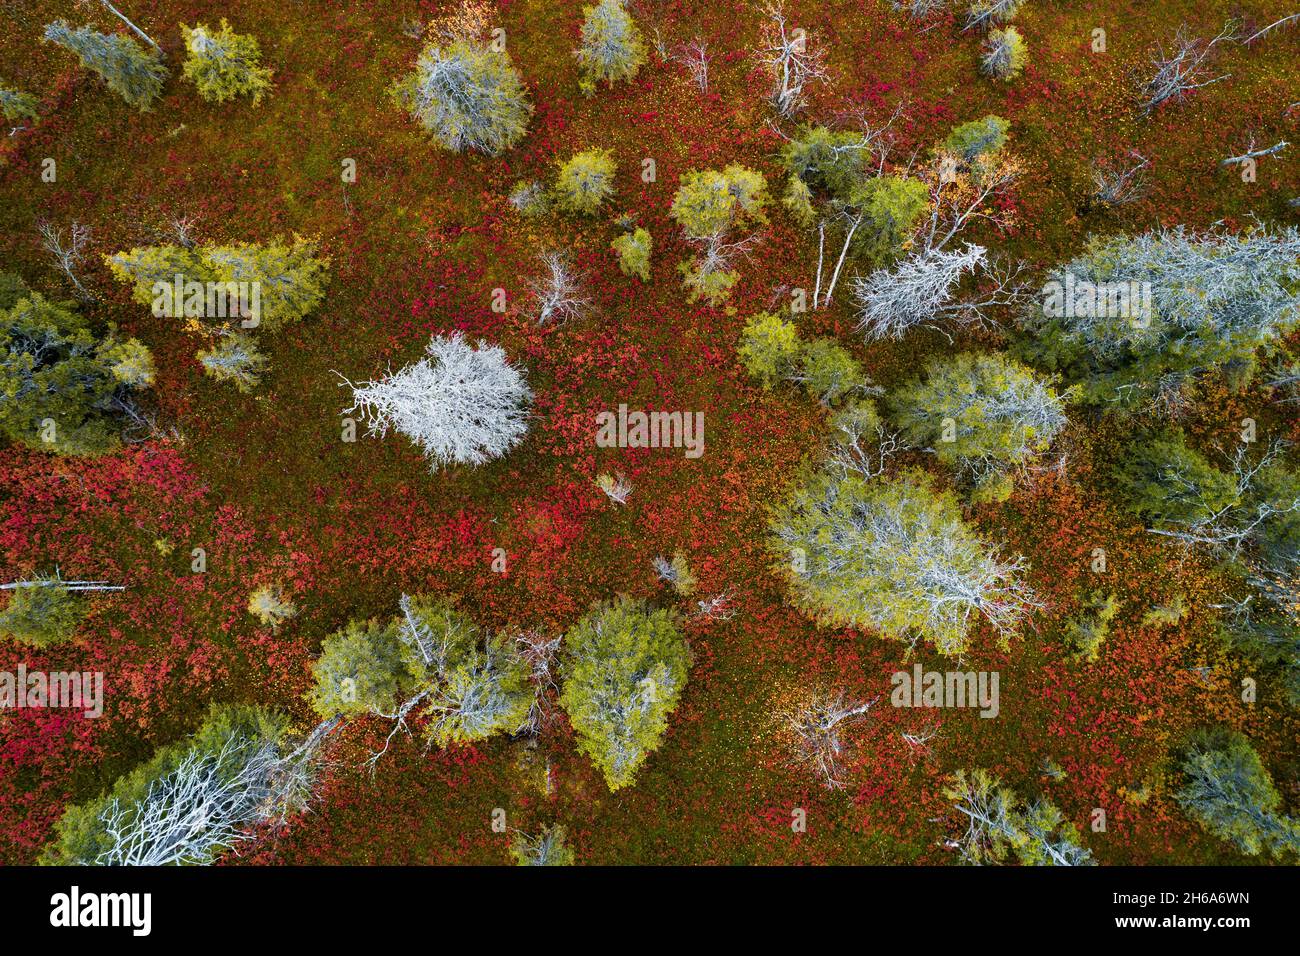 Ein Blick aus der Vogelperspektive auf das bunte Herbstlaub im Riisitunturi-Nationalpark mit wunderschönen Taigawäldern und toten Fichtenbäumen in Nordfinnland. Stockfoto